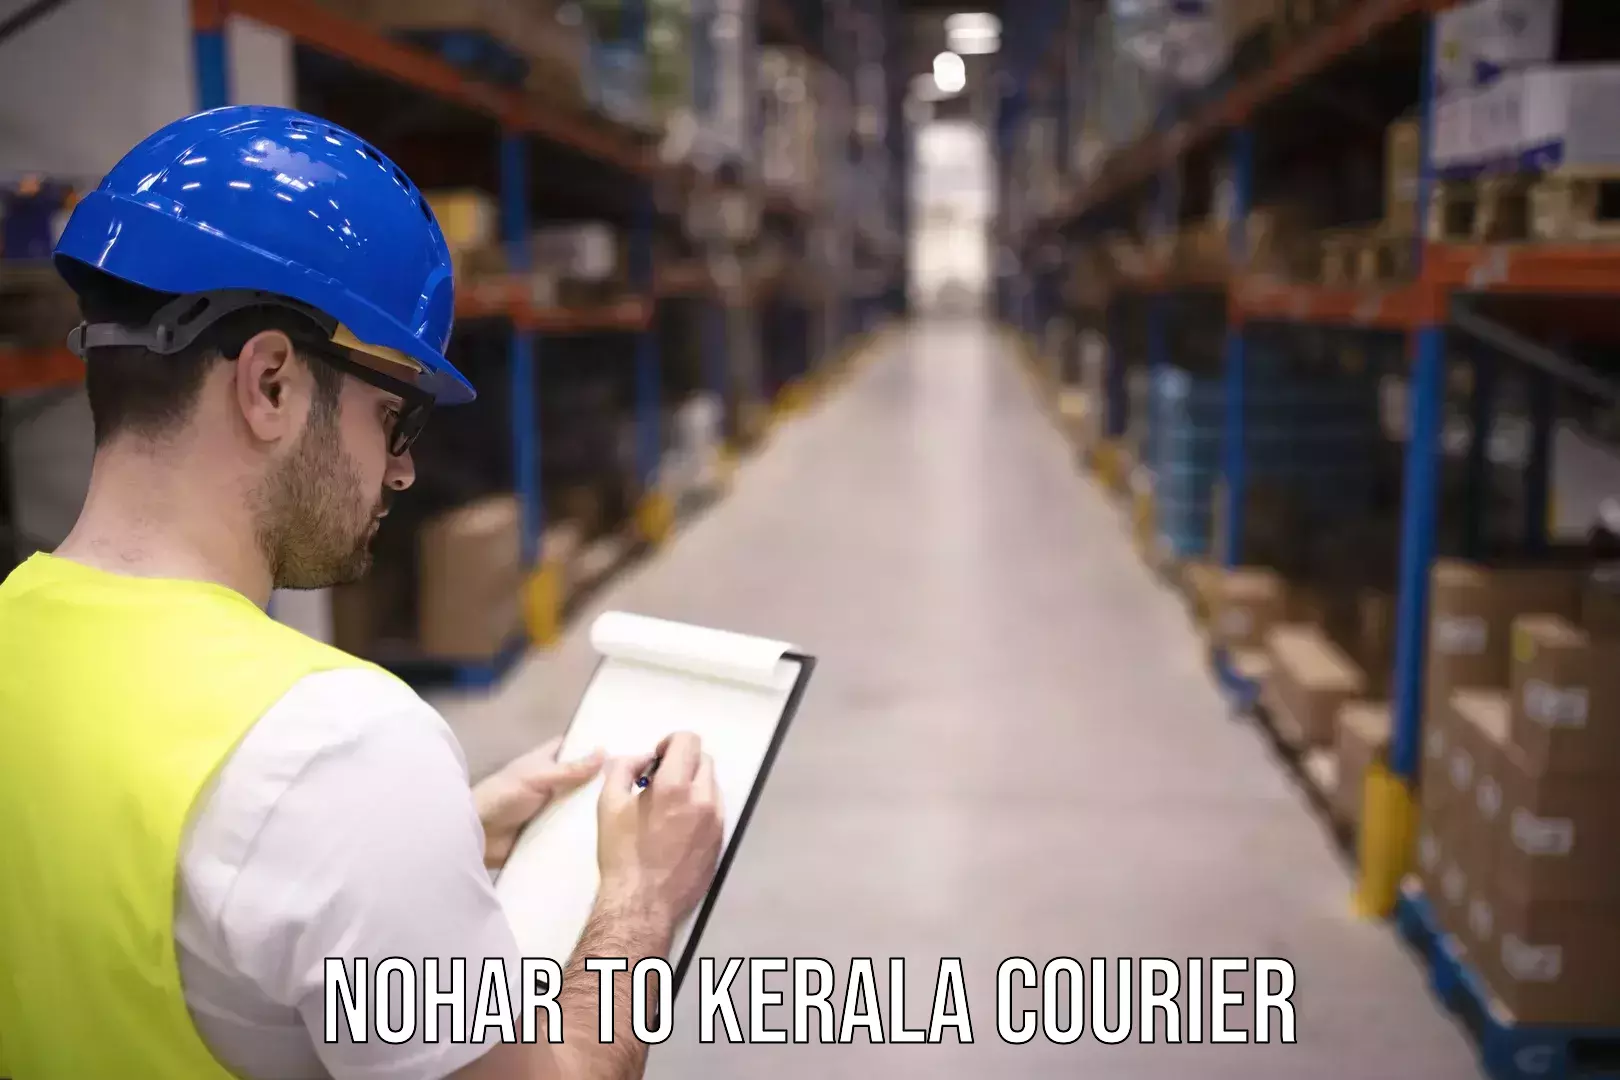 24/7 courier service Nohar to Kalpetta